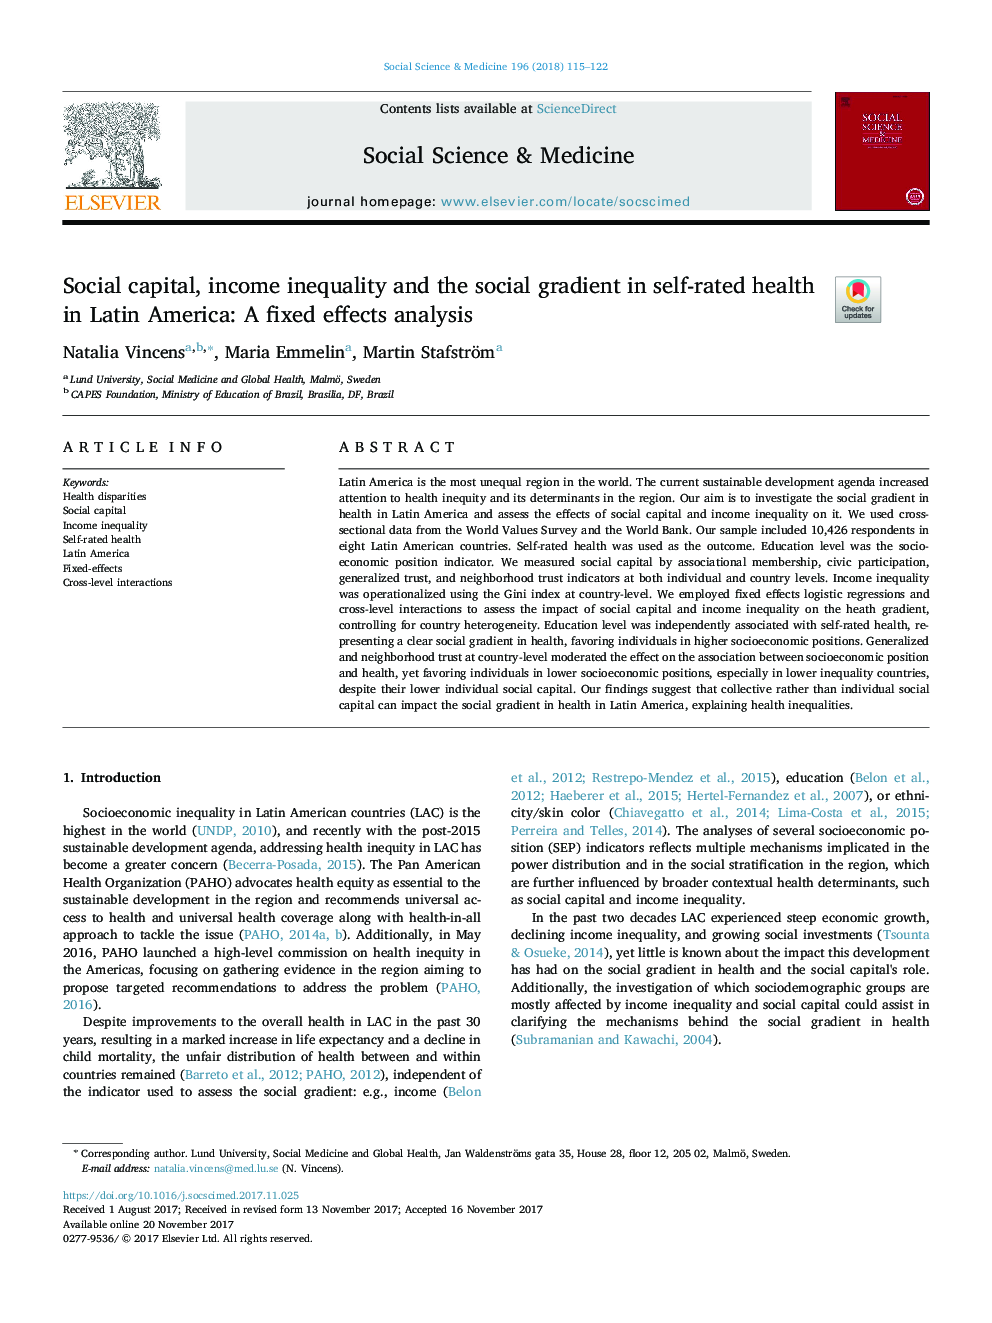 سرمایه اجتماعی، نابرابری درآمد و شیب اجتماعی در سلامت خود در آمریکای لاتین: تحلیل اثرات ثابت 